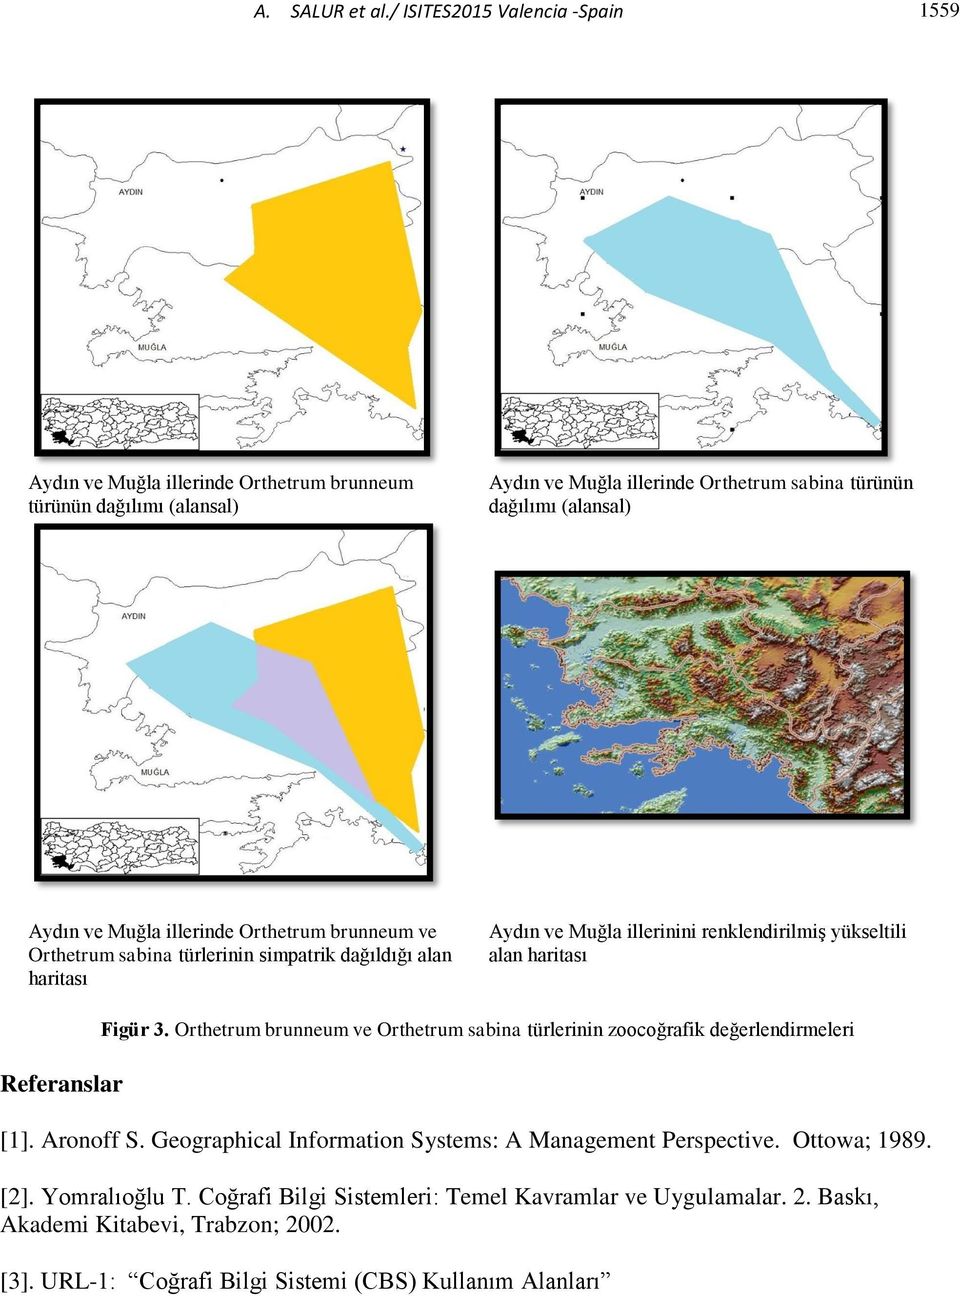 Muğla illerinde Orthetrum brunneum ve Orthetrum sabina türlerinin simpatrik dağıldığı alan haritası Aydın ve Muğla illerinini renklendirilmiş yükseltili alan haritası Referanslar